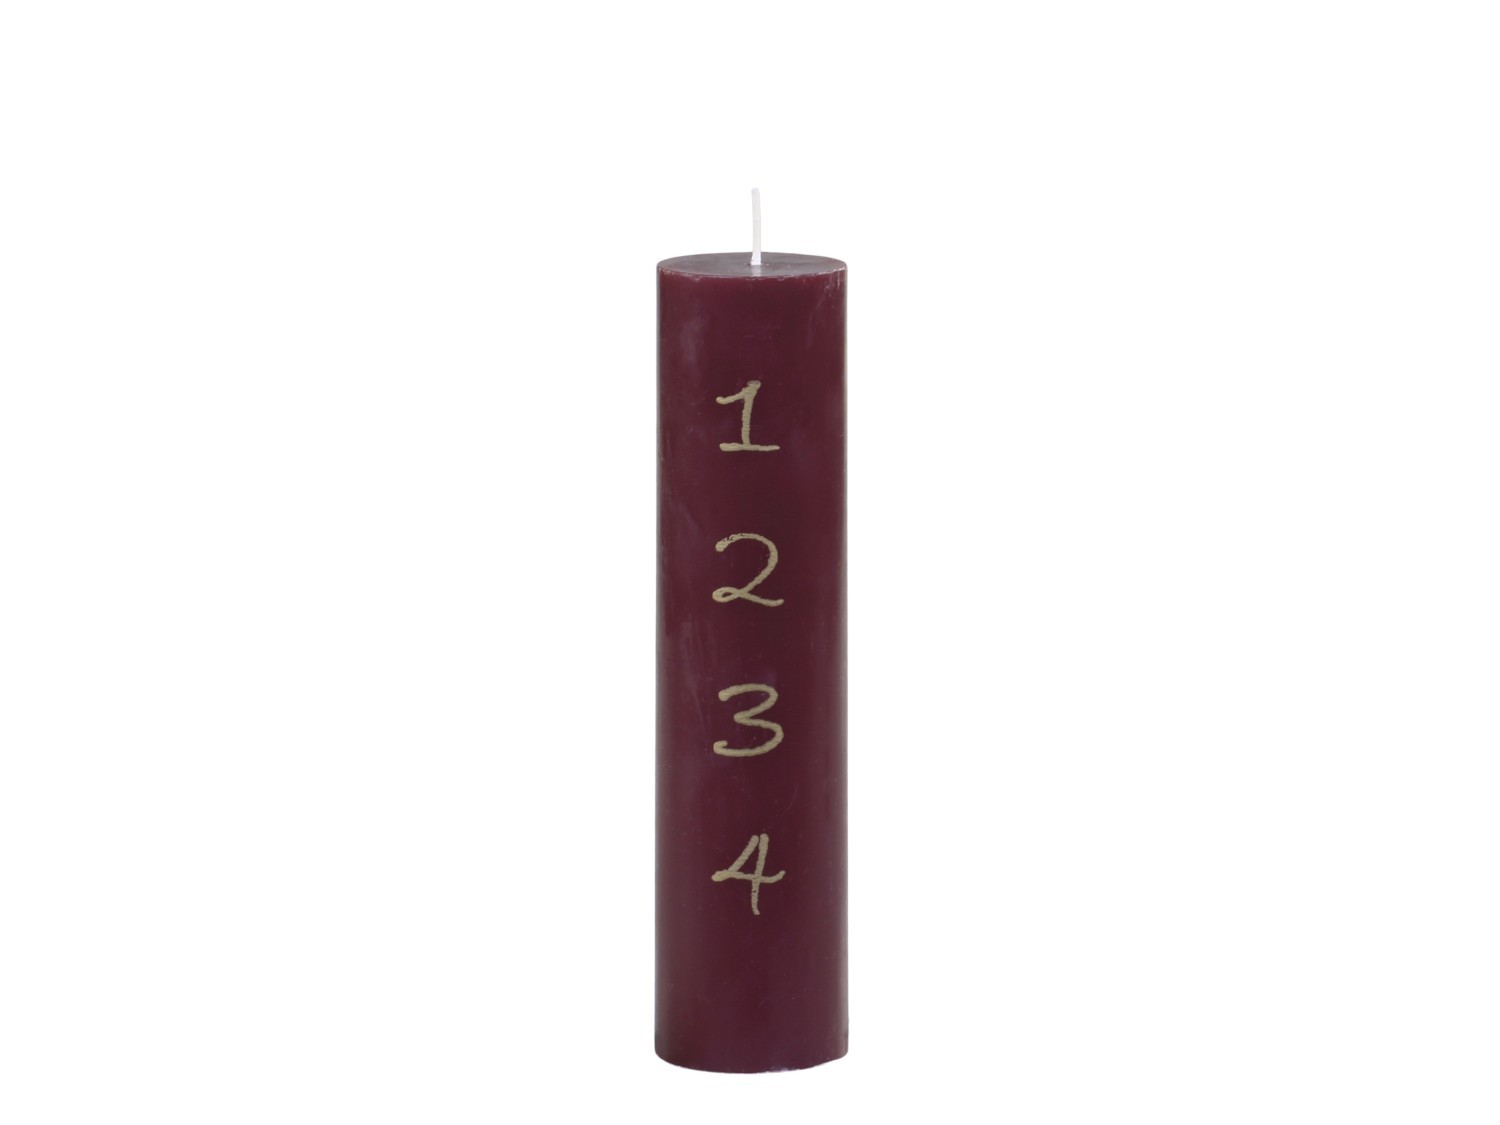 Červená adventní svíčka s čísly 1- 4 Advent Candle - Ø 5*20cm / 48h Chic Antique